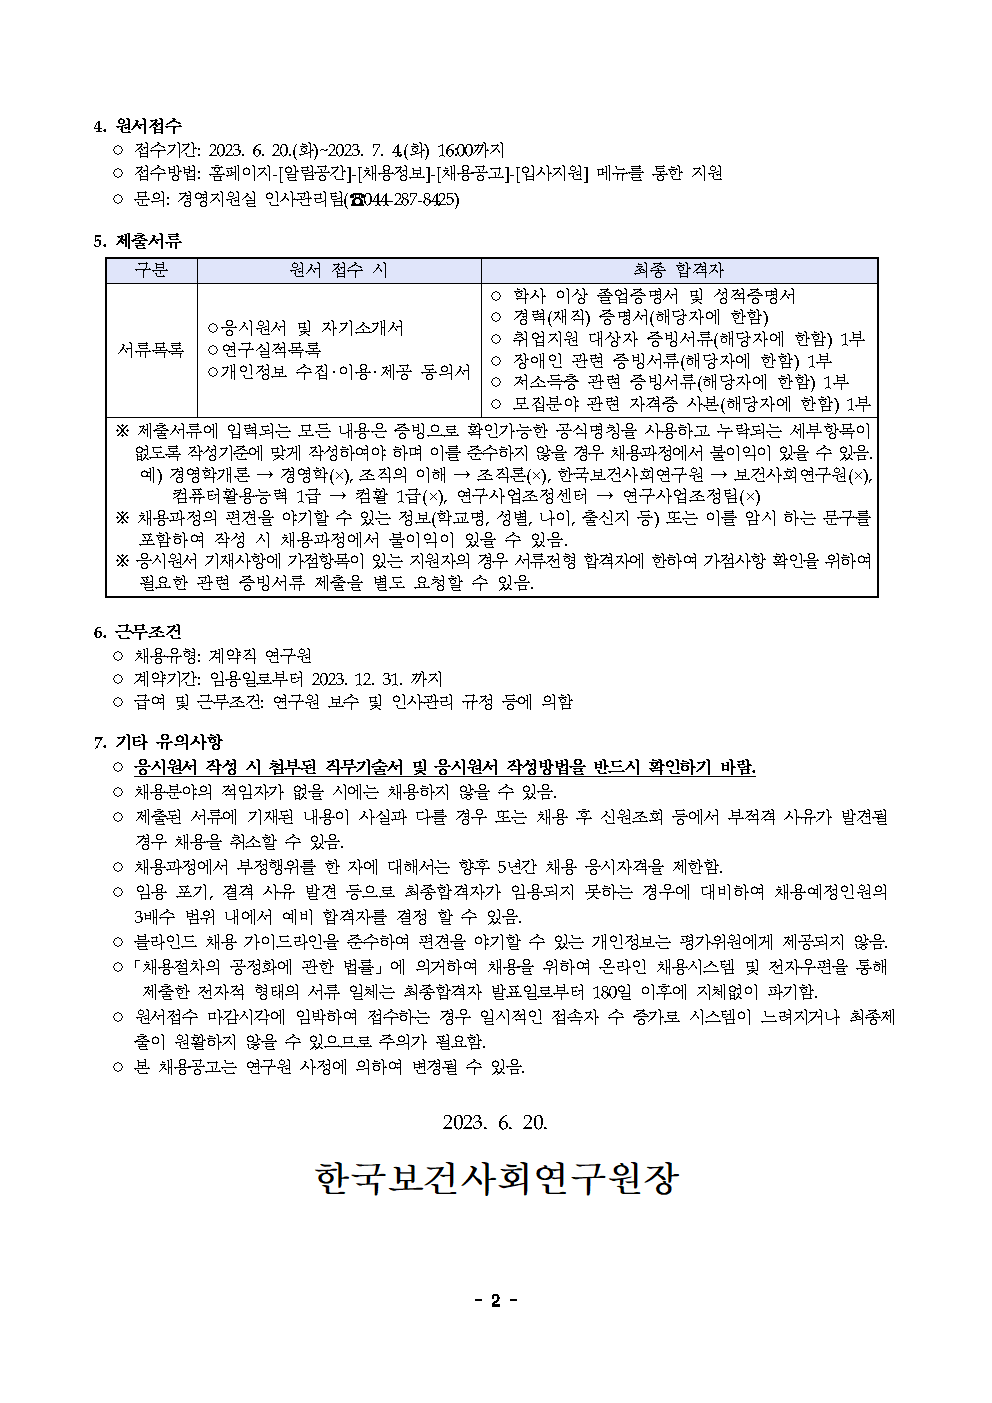 (2/2) 한국보건사회연구원 계약직 연구원 채용(사회보장재정데이터연구실) - 자세한 내용은 하단 참조